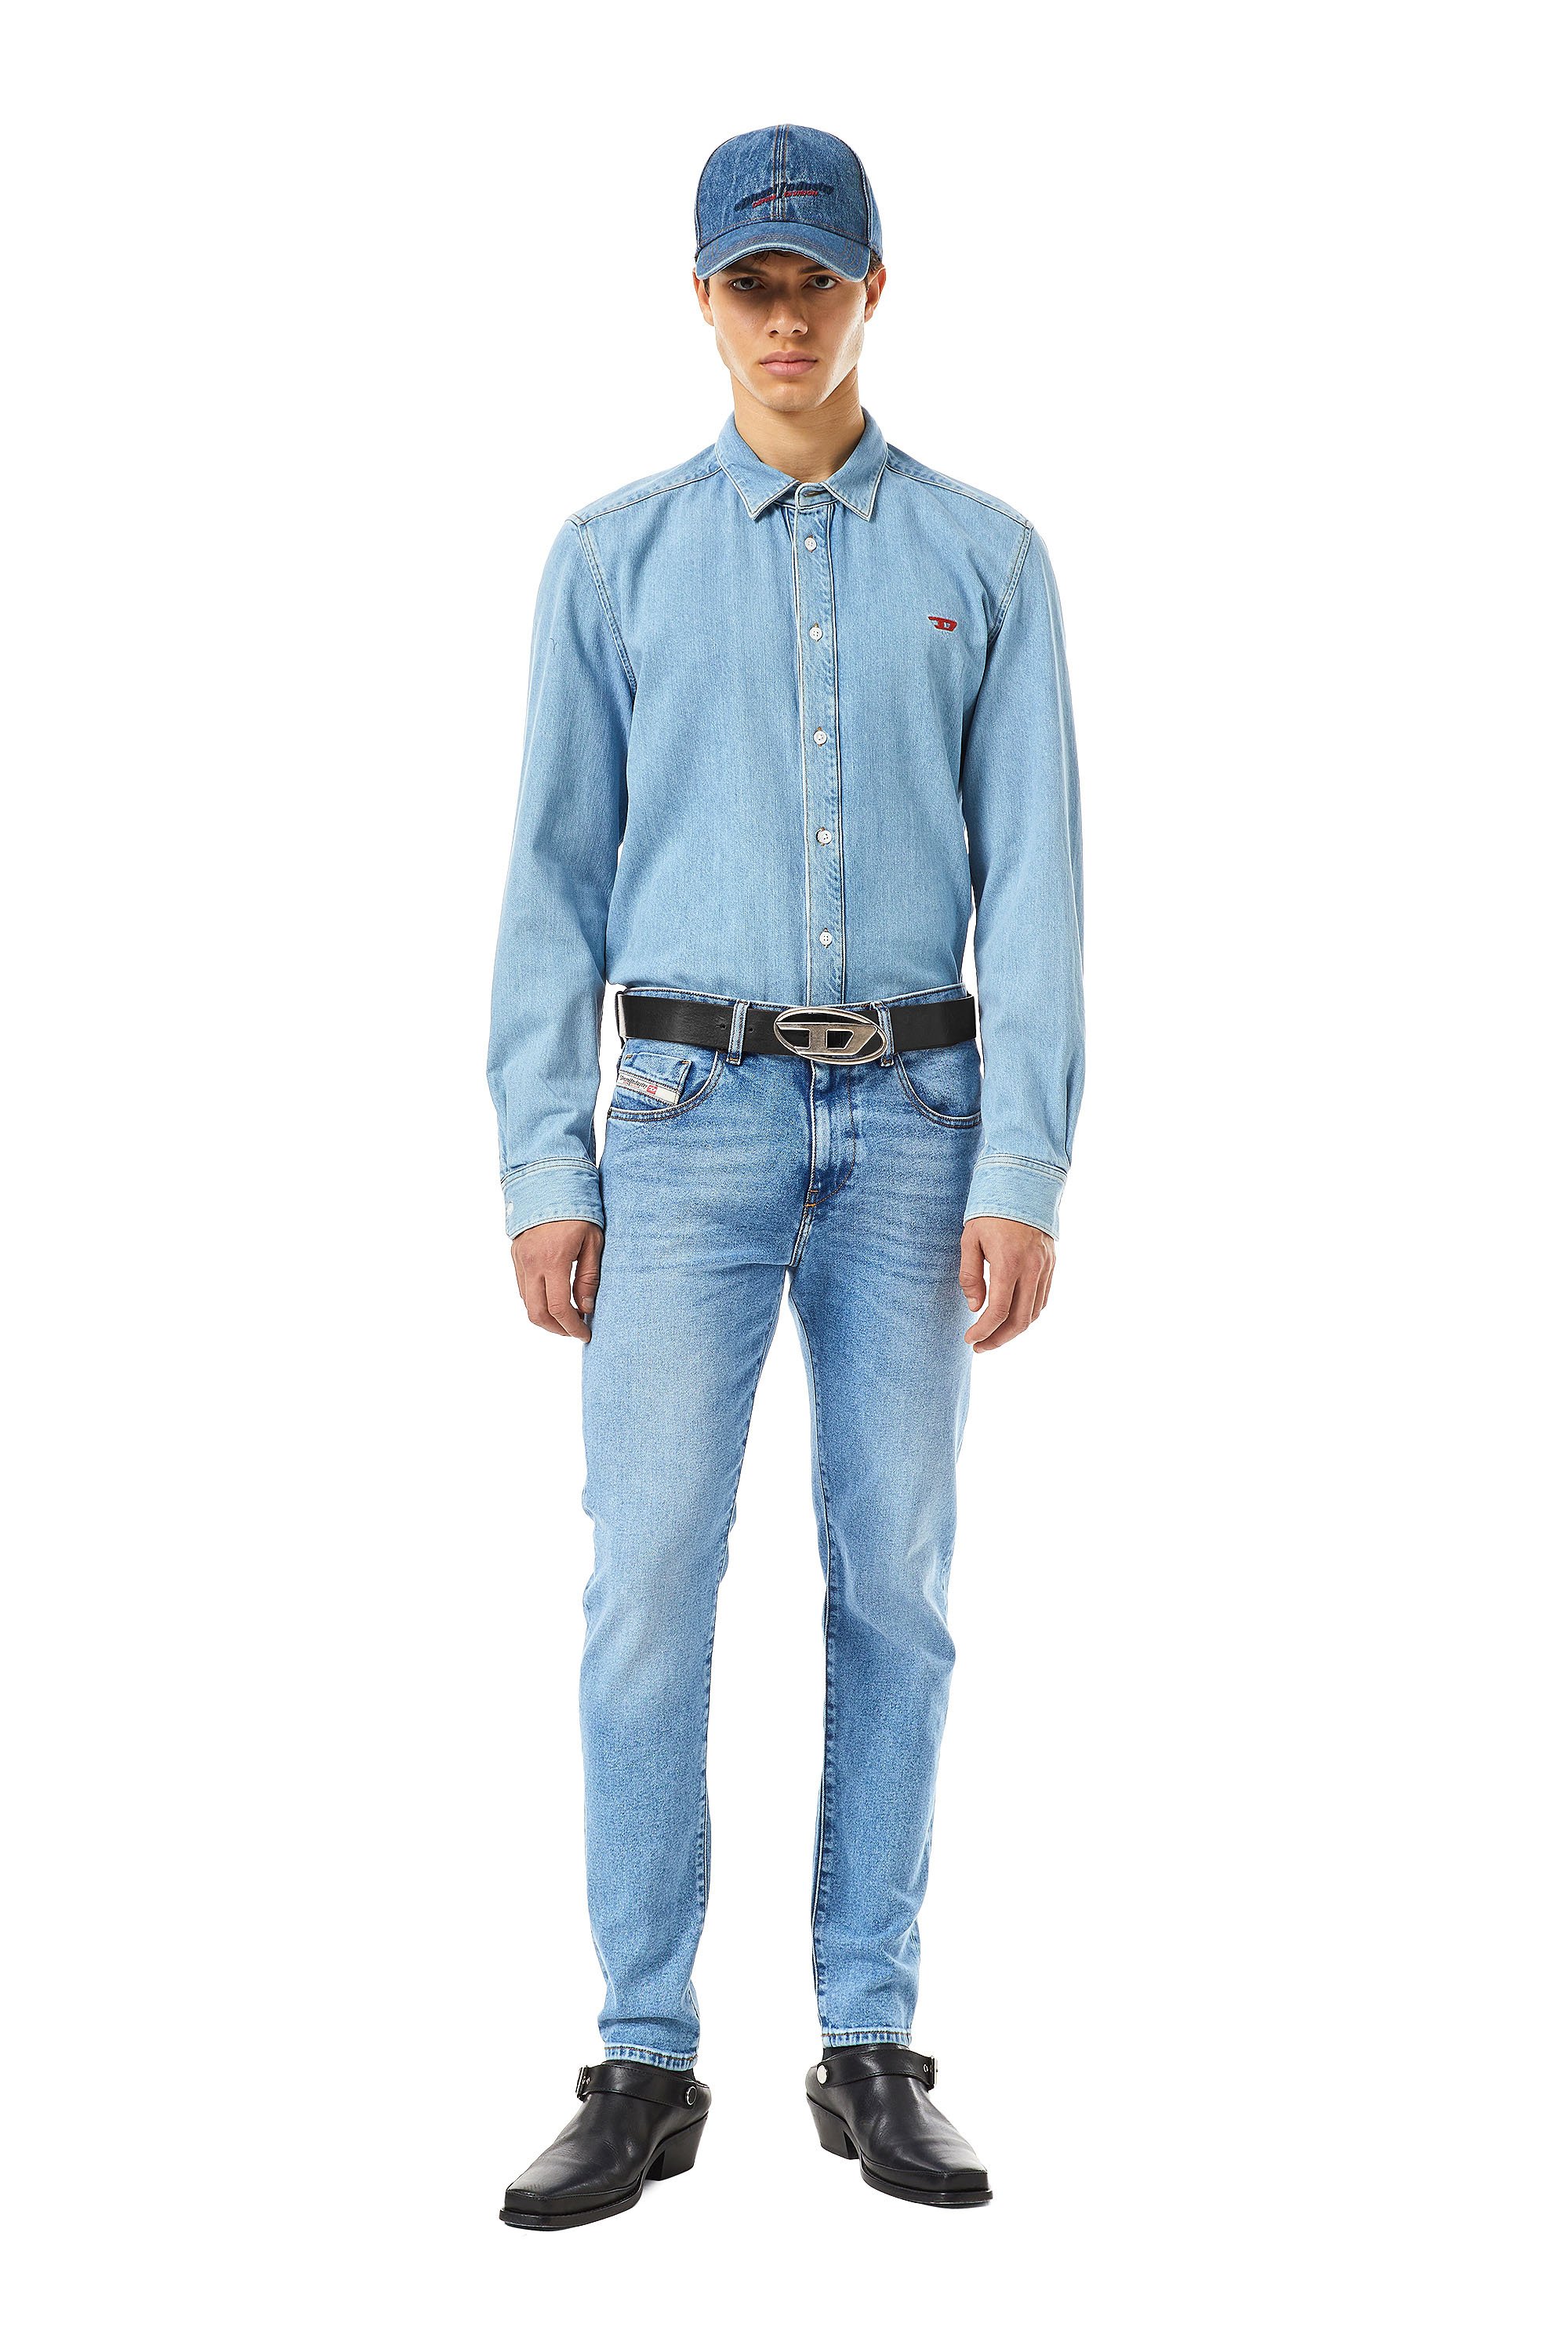 Diesel - Slim Jeans 2019 D-Strukt 09B92, Light Blue - Image 2